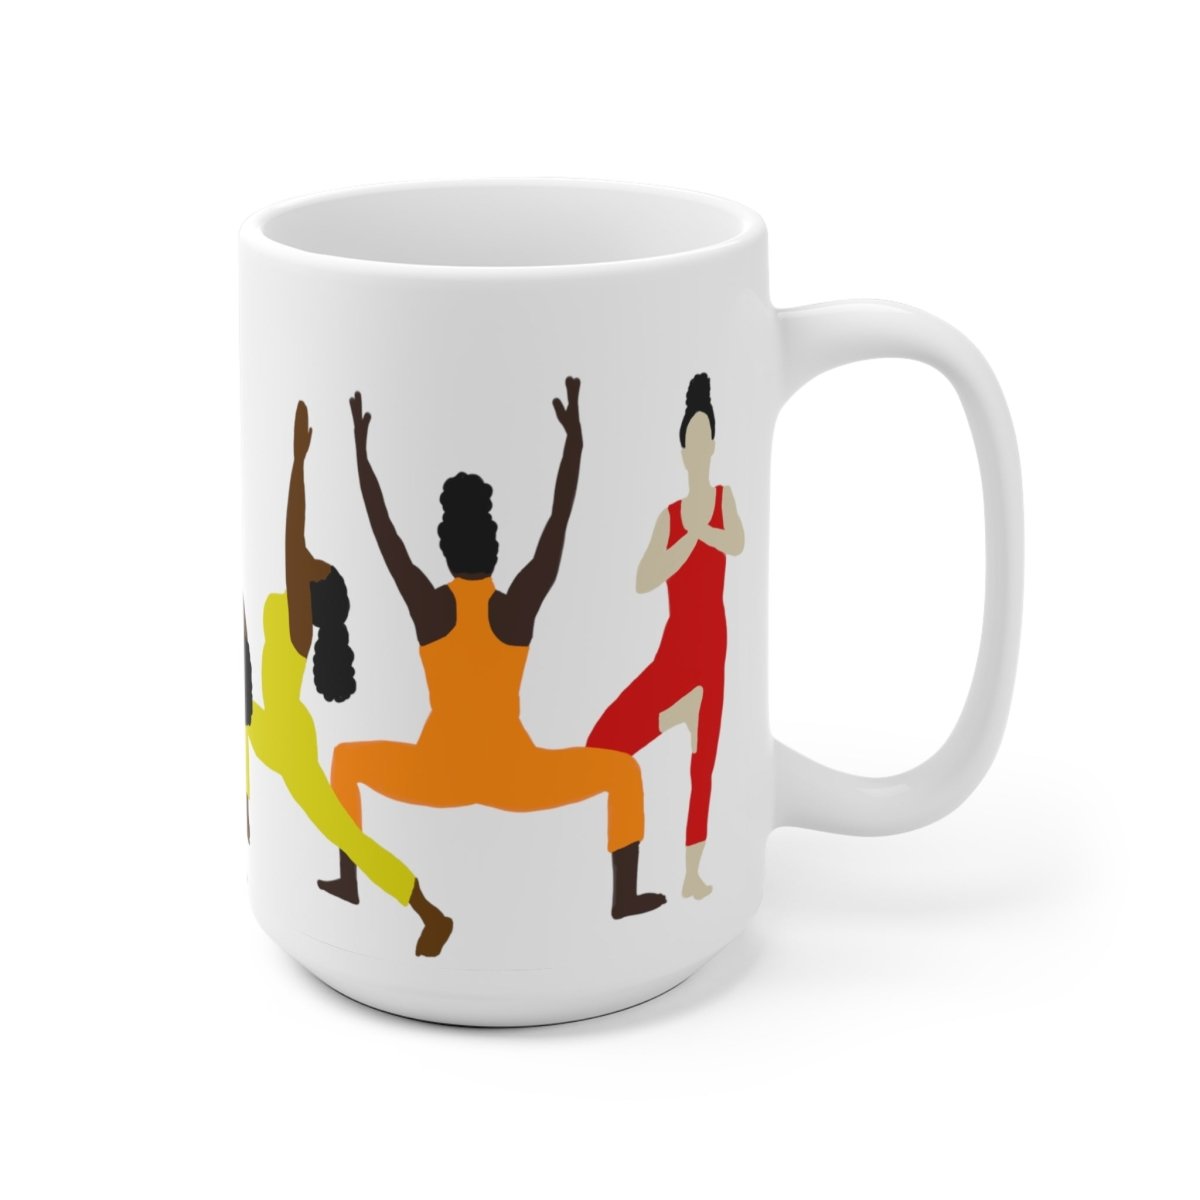 Yoga Chakras Mug - The Trini Gee